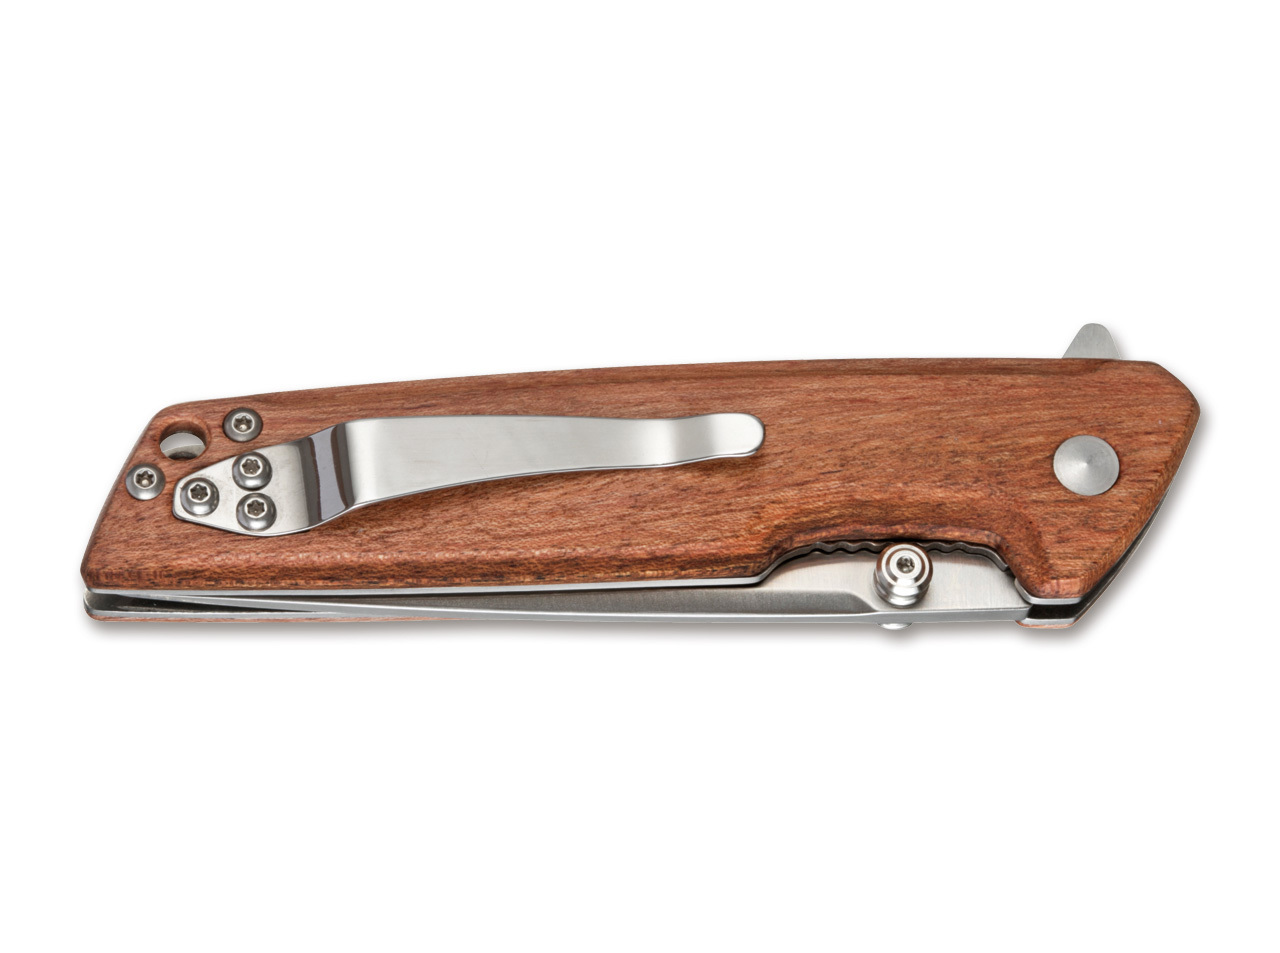 Складной нож Magnum Straight Brother Wood - Boker 01MB723, сталь 440A Satin, рукоять дерево, коричневый от Ножиков